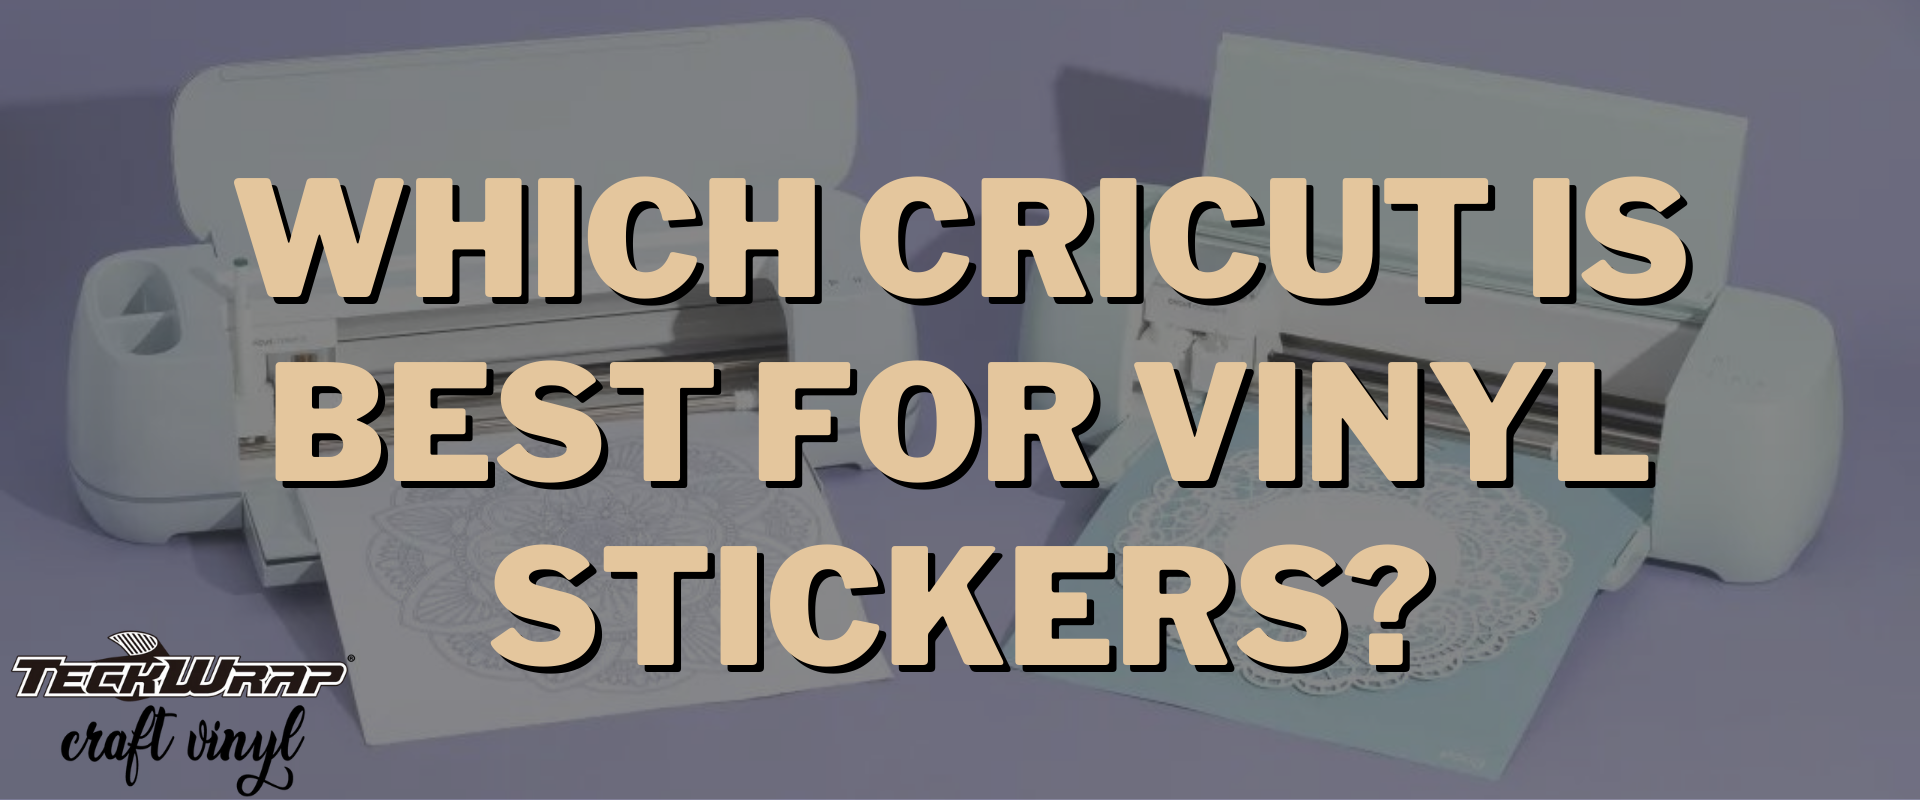 Cricut Joy Smart Permanent Vinyl Bundle - Adhesive Vinyl Set with Five  Colors for Die Cutting Machines